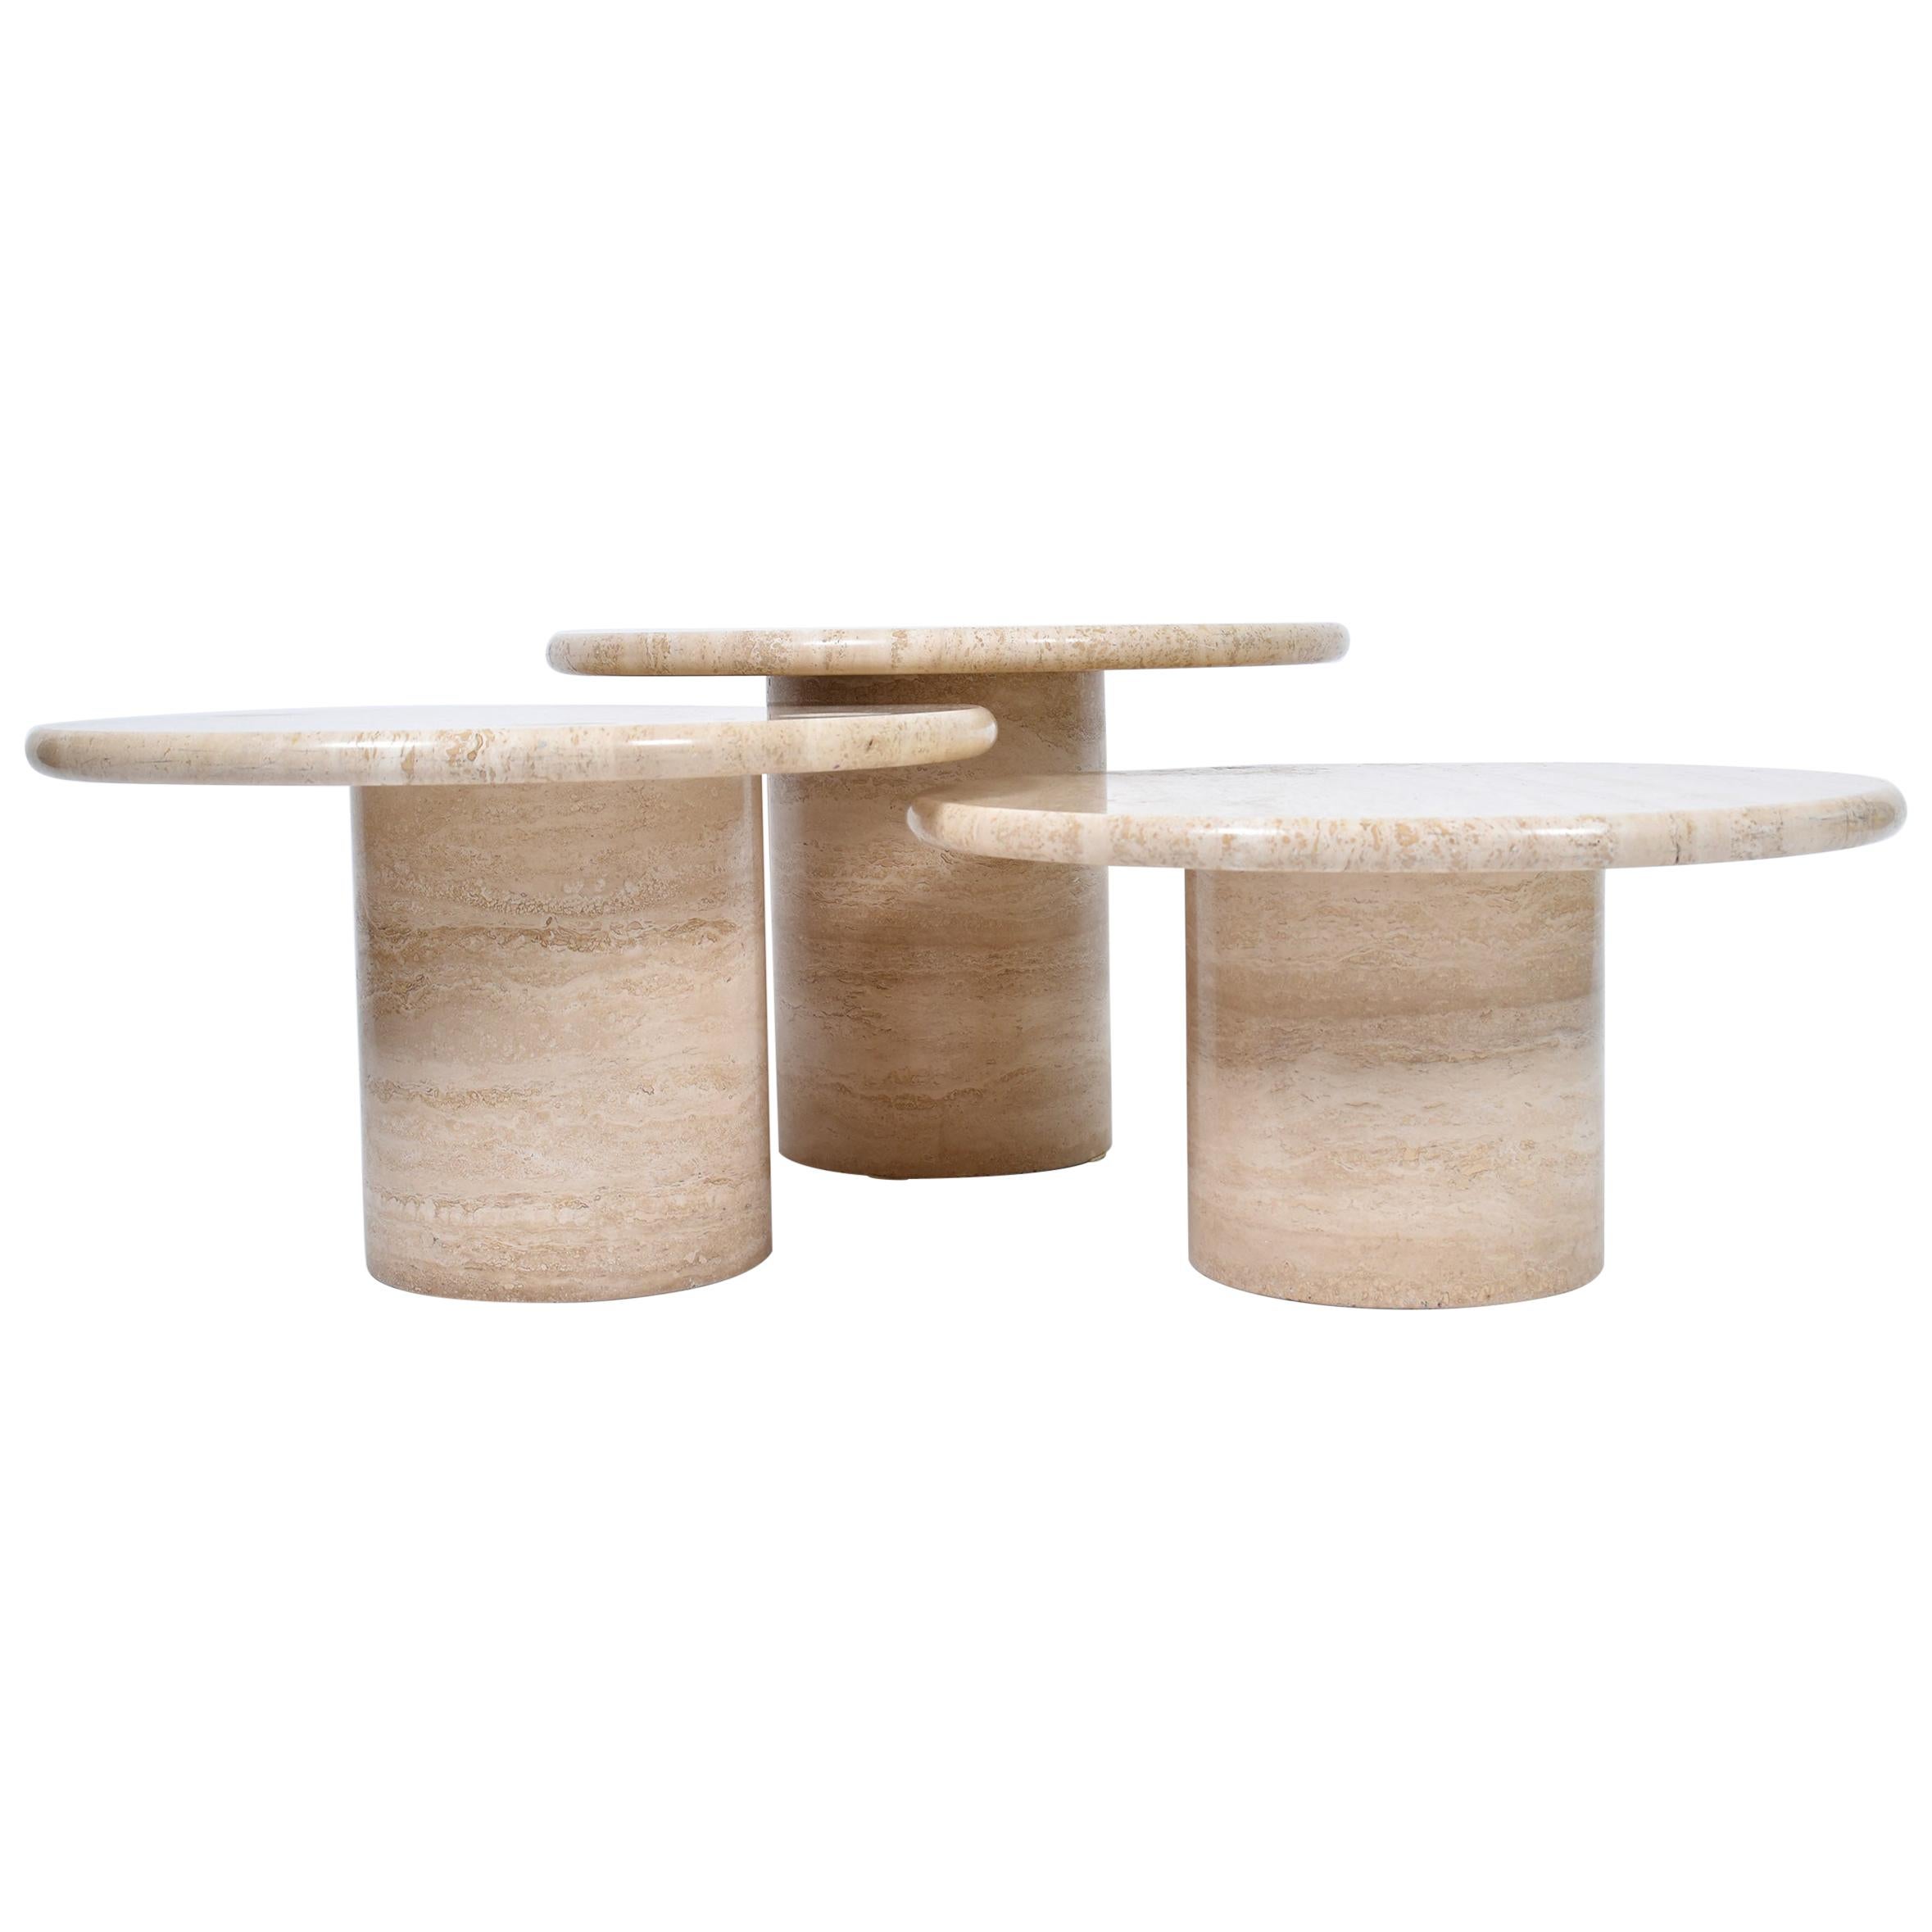 Set of Mid-Century Modern Cream Travertine Round Pedestal Coffee Tables, 1970